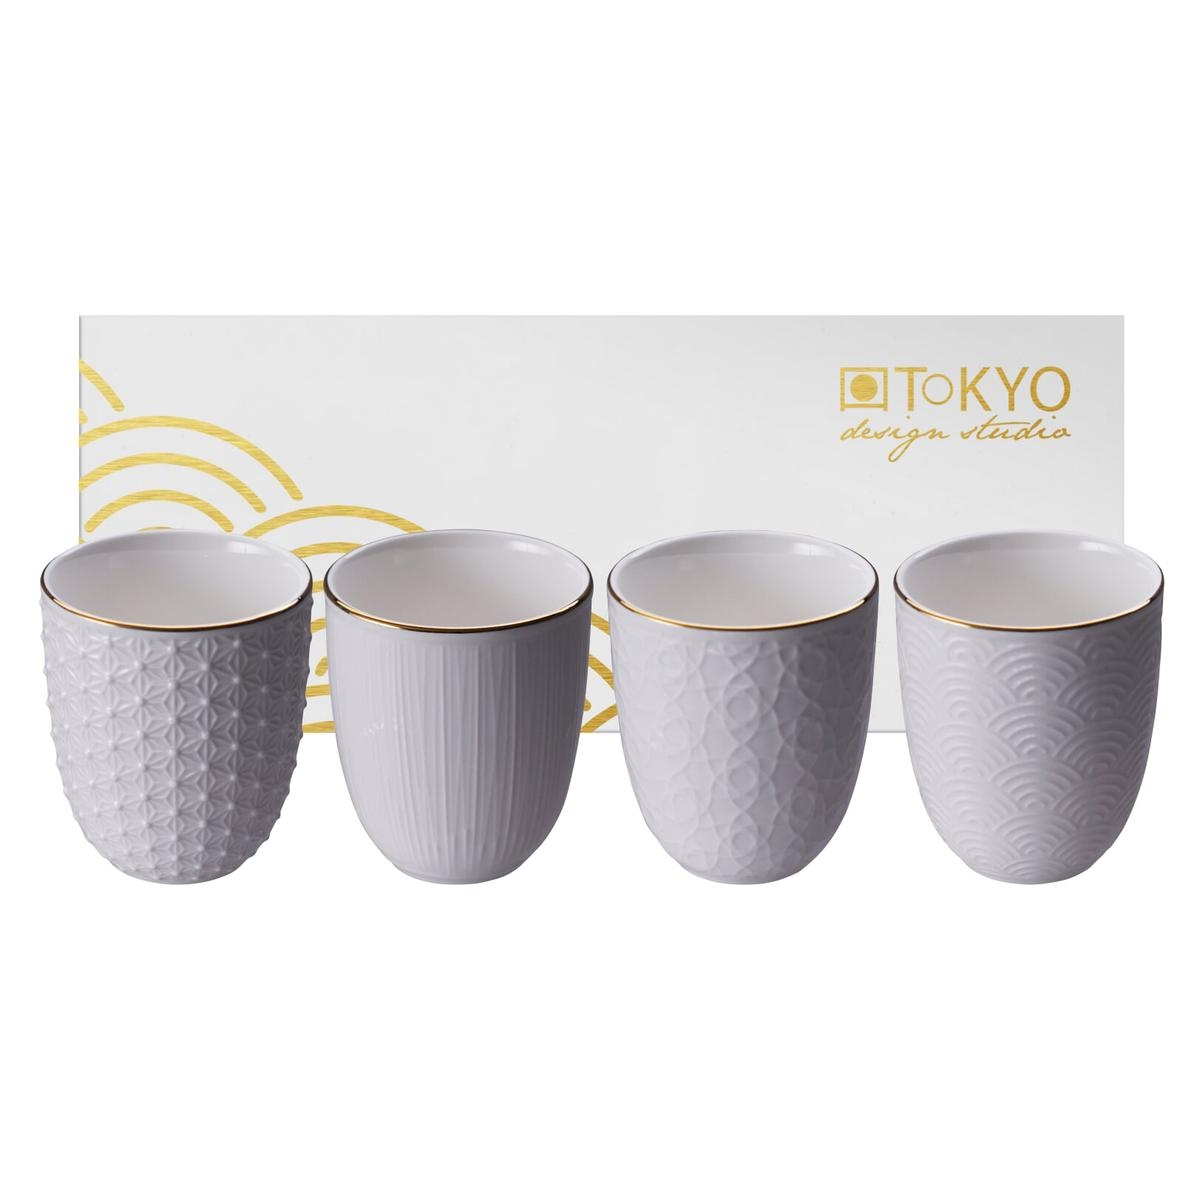 TOKYO design studio Nippon White Set 4 Tazze Bianco con piattini con Bordo in Oro Design Giapponese Confezione Regalo incl. Porcellana Asiatica 100 ml Altezza 4,6 cm Ø 7,7 cm 